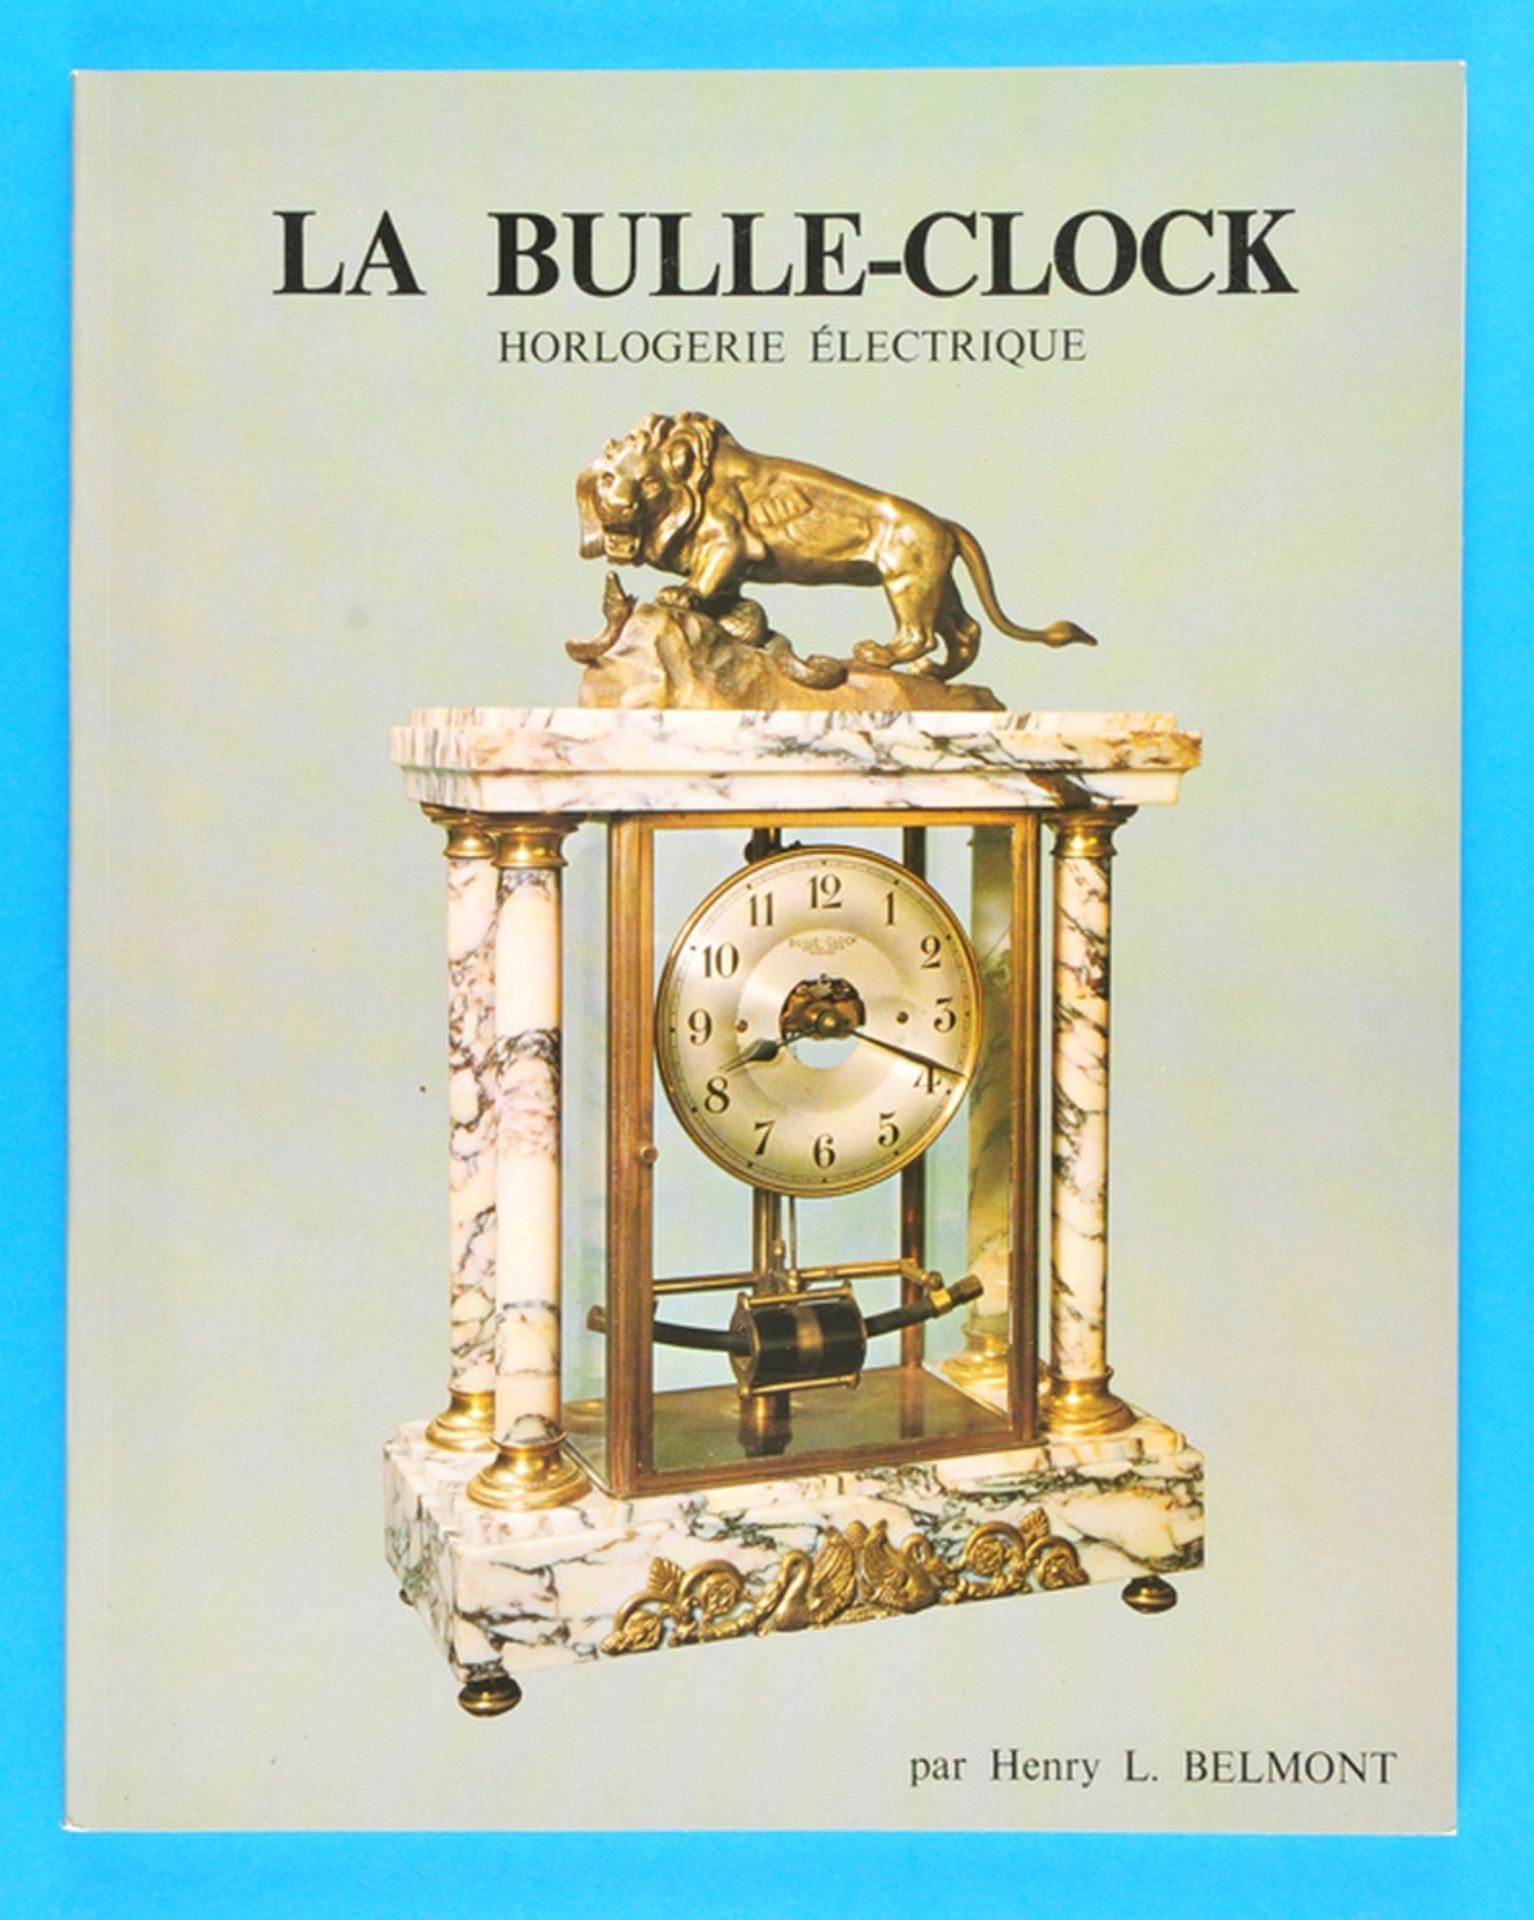 Henry L. Belmont, La Bulle-Clock, Horlogerie Électrique, 1989